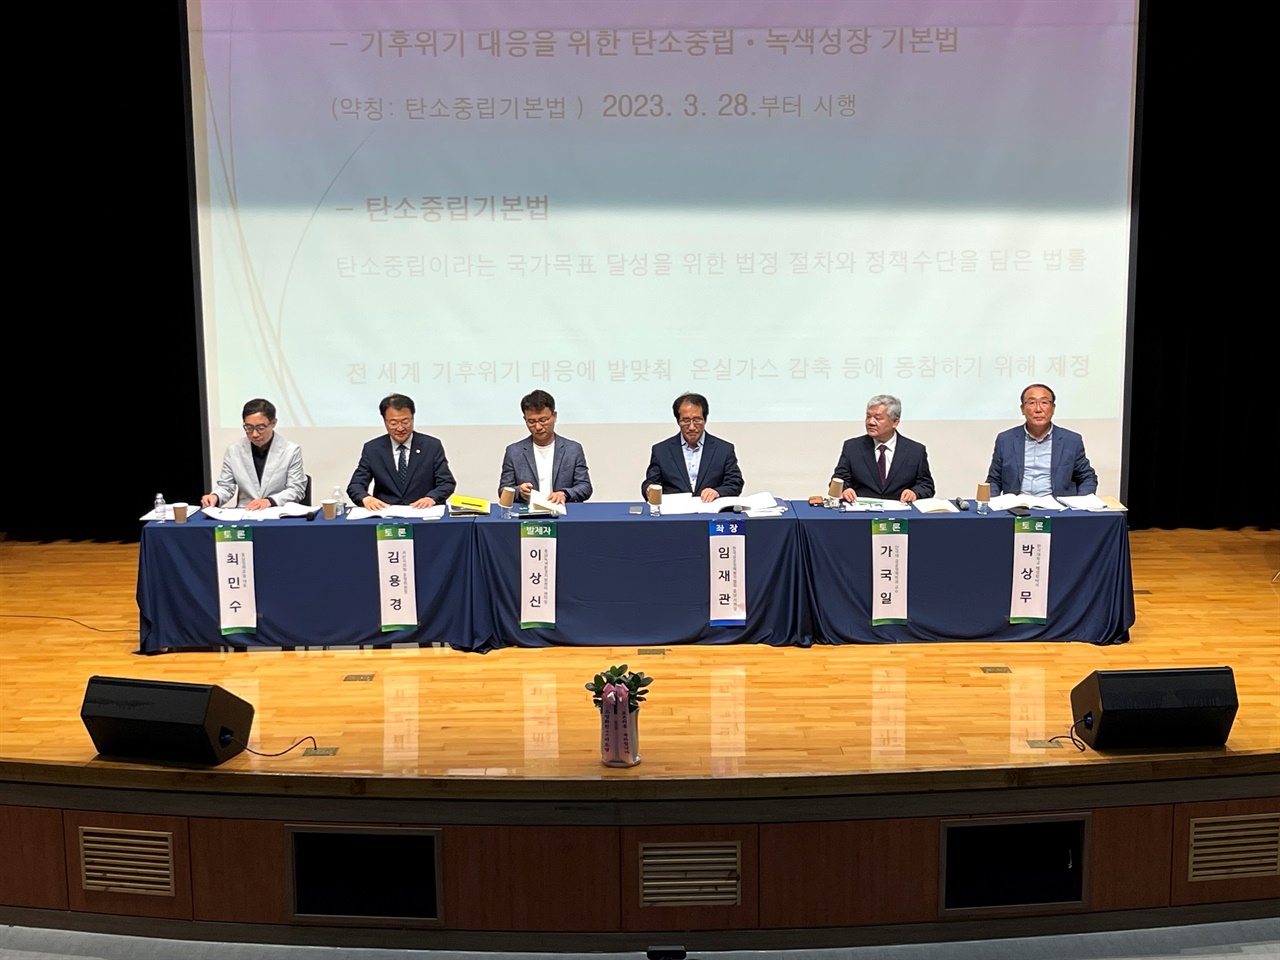 한국공공정책평가협회 충남지회와 서산태안환경운동연합이 28일 ‘기후환경 위기와 탄소중립 정책토론회’를 개최했다.
